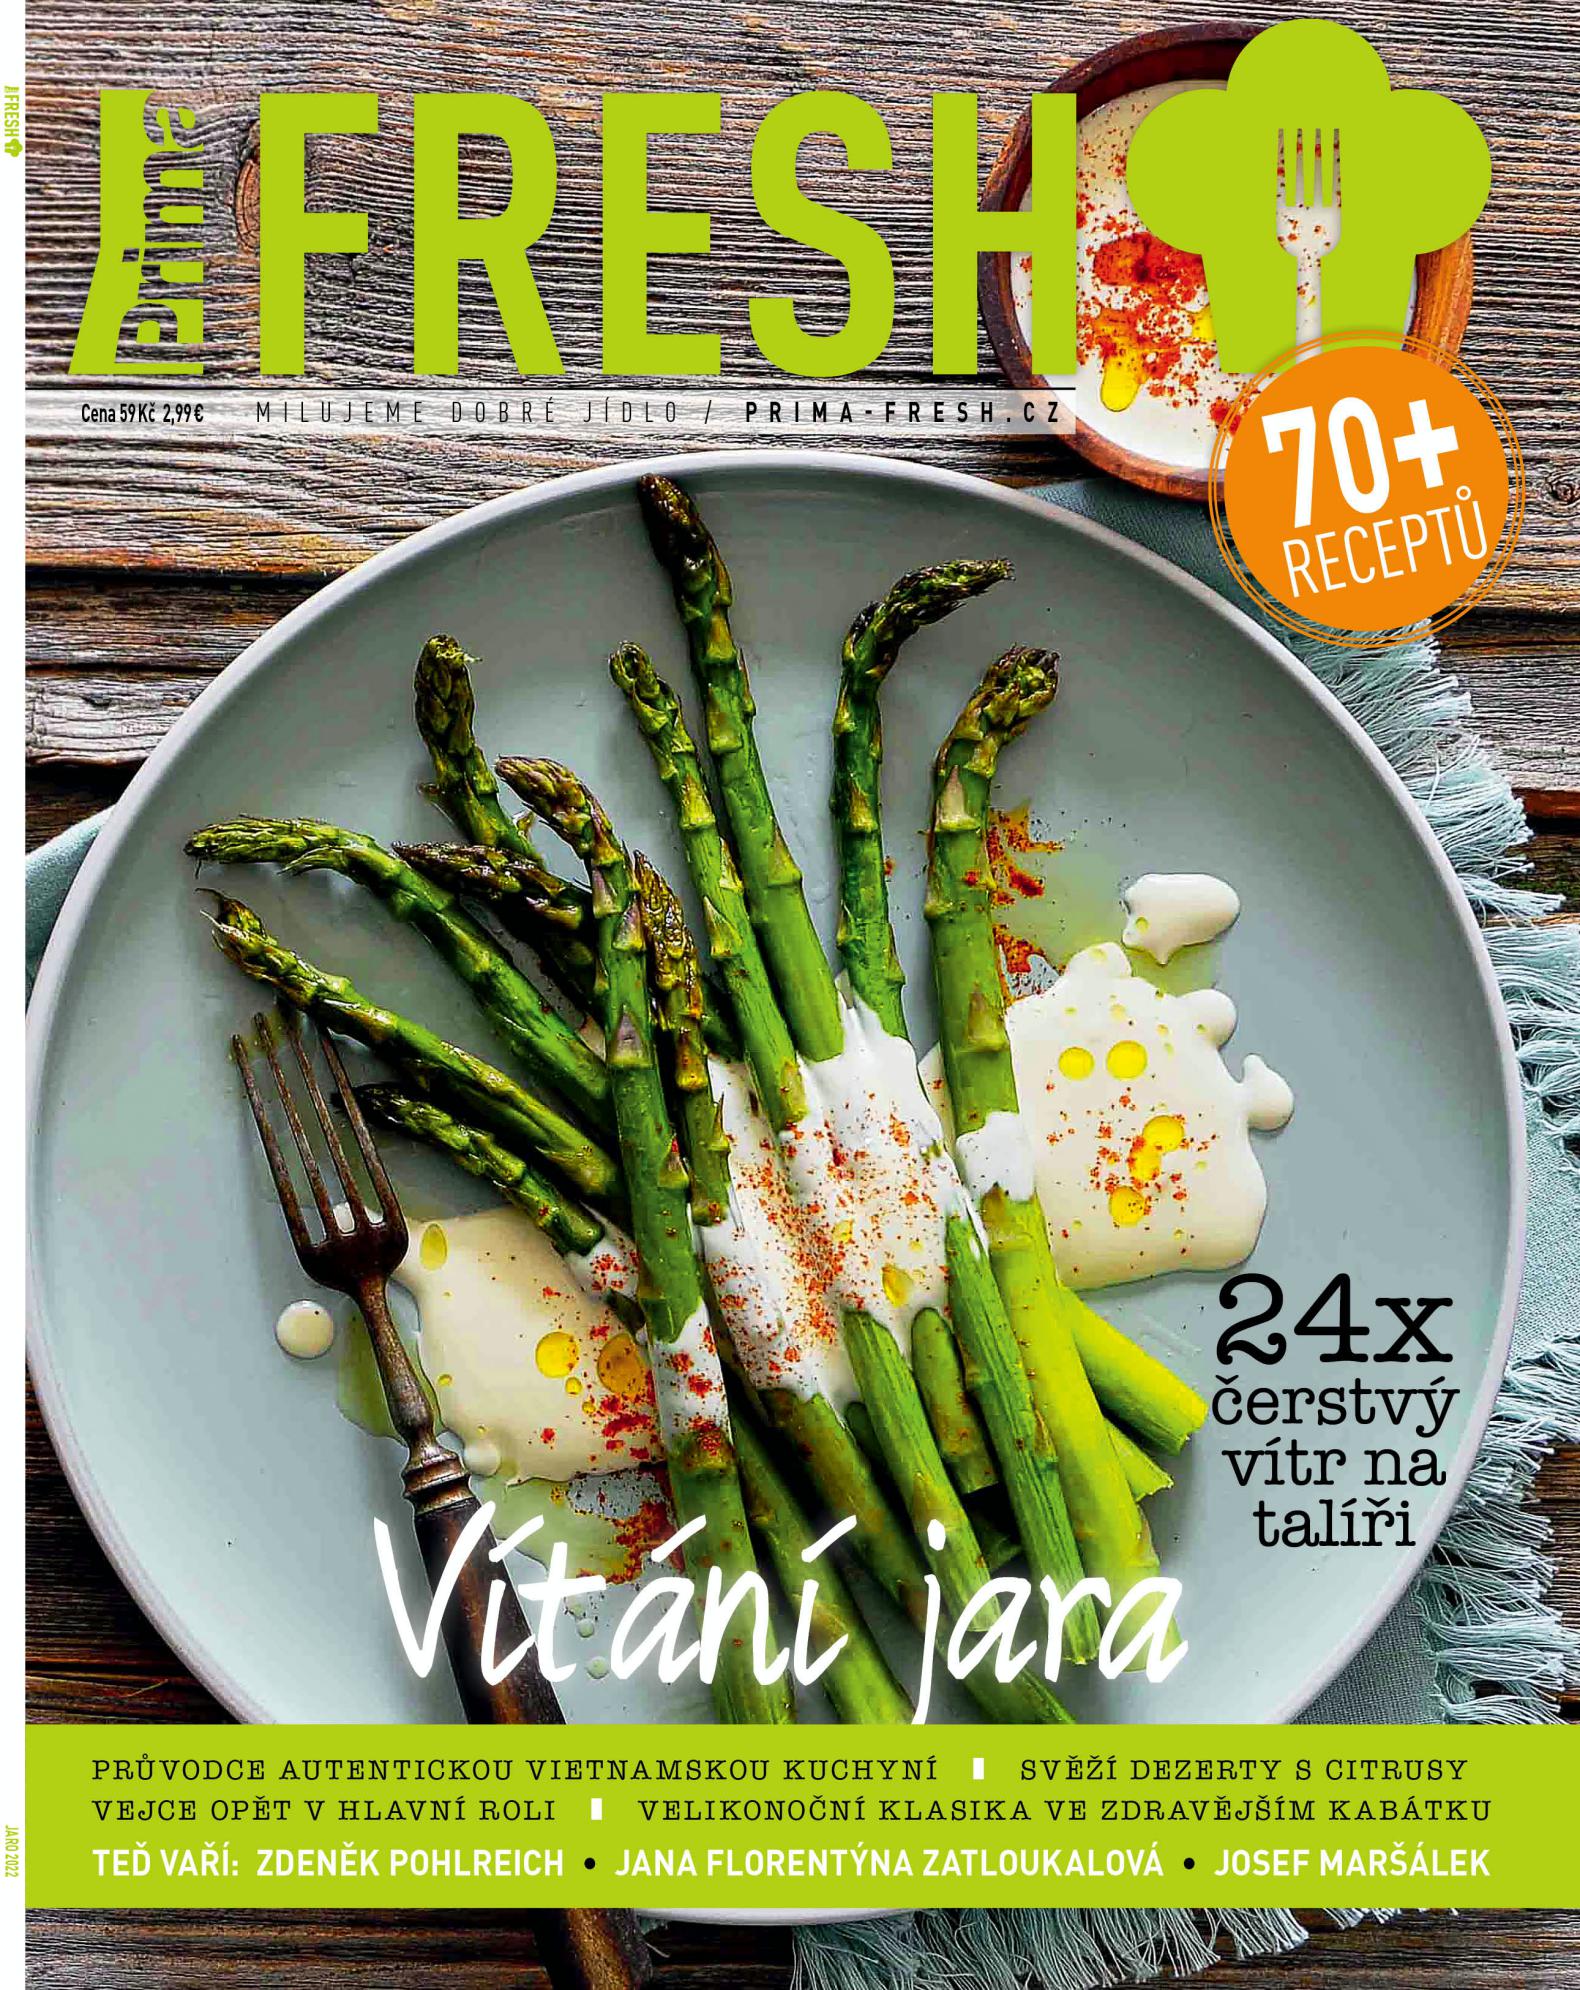 Časopis Prima Fresh & Vítání jara